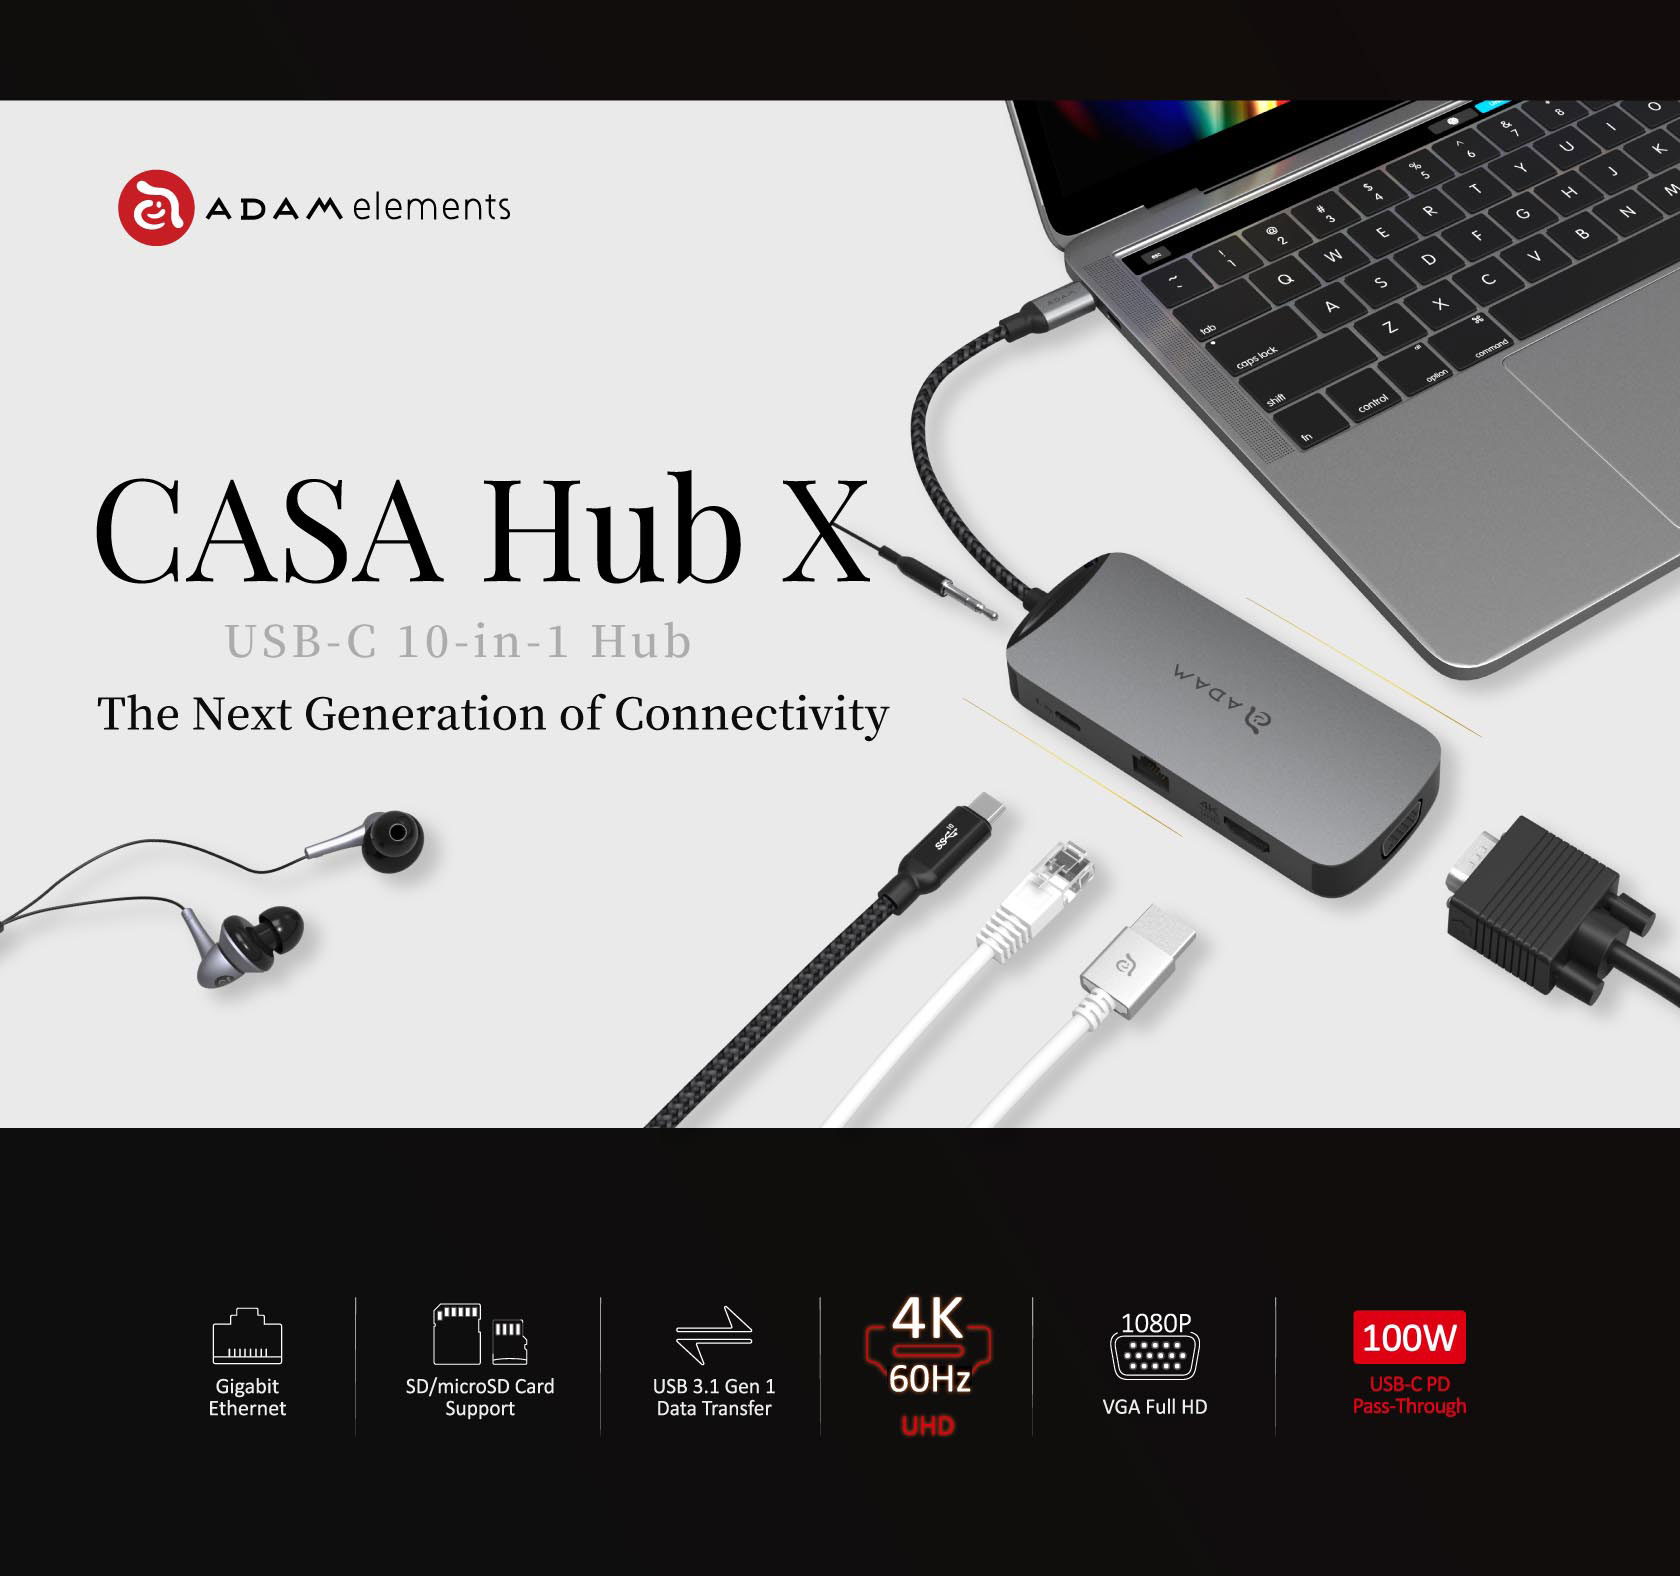 CASA HUB X USB C 3.1 10 in 1 Port Hub 1